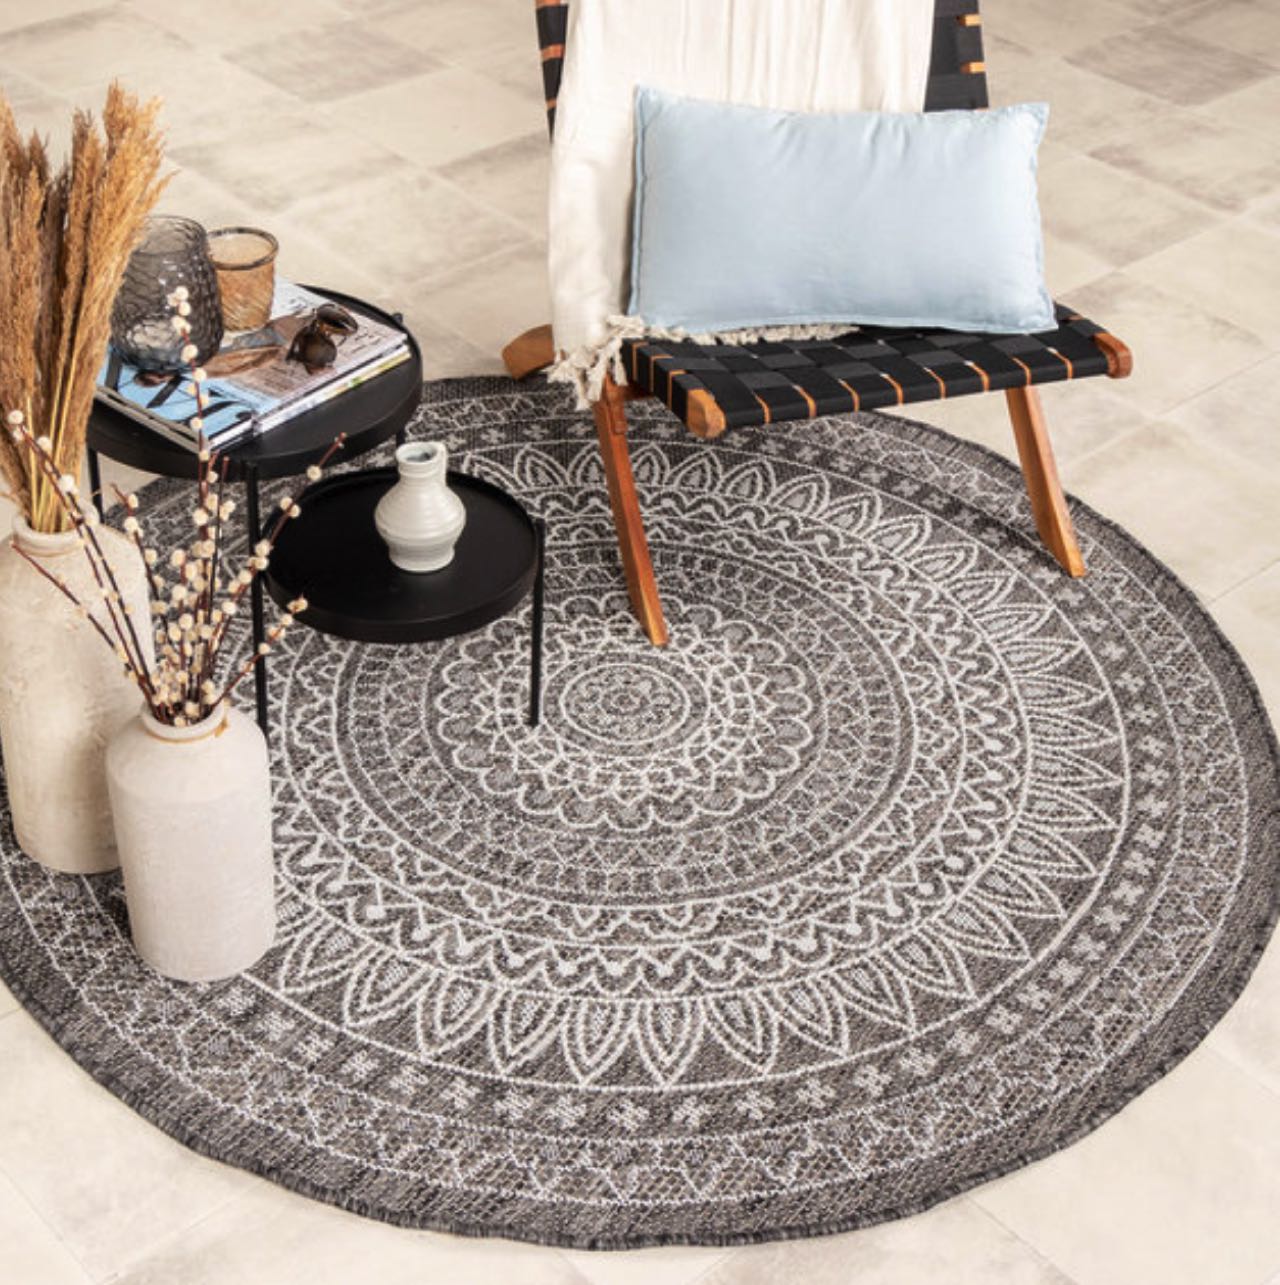 Der runde Teppich von Volero ist nicht nur für die Wohnung sondern auch für die Terrasse geeignet und ein hübscher Hingucker. 